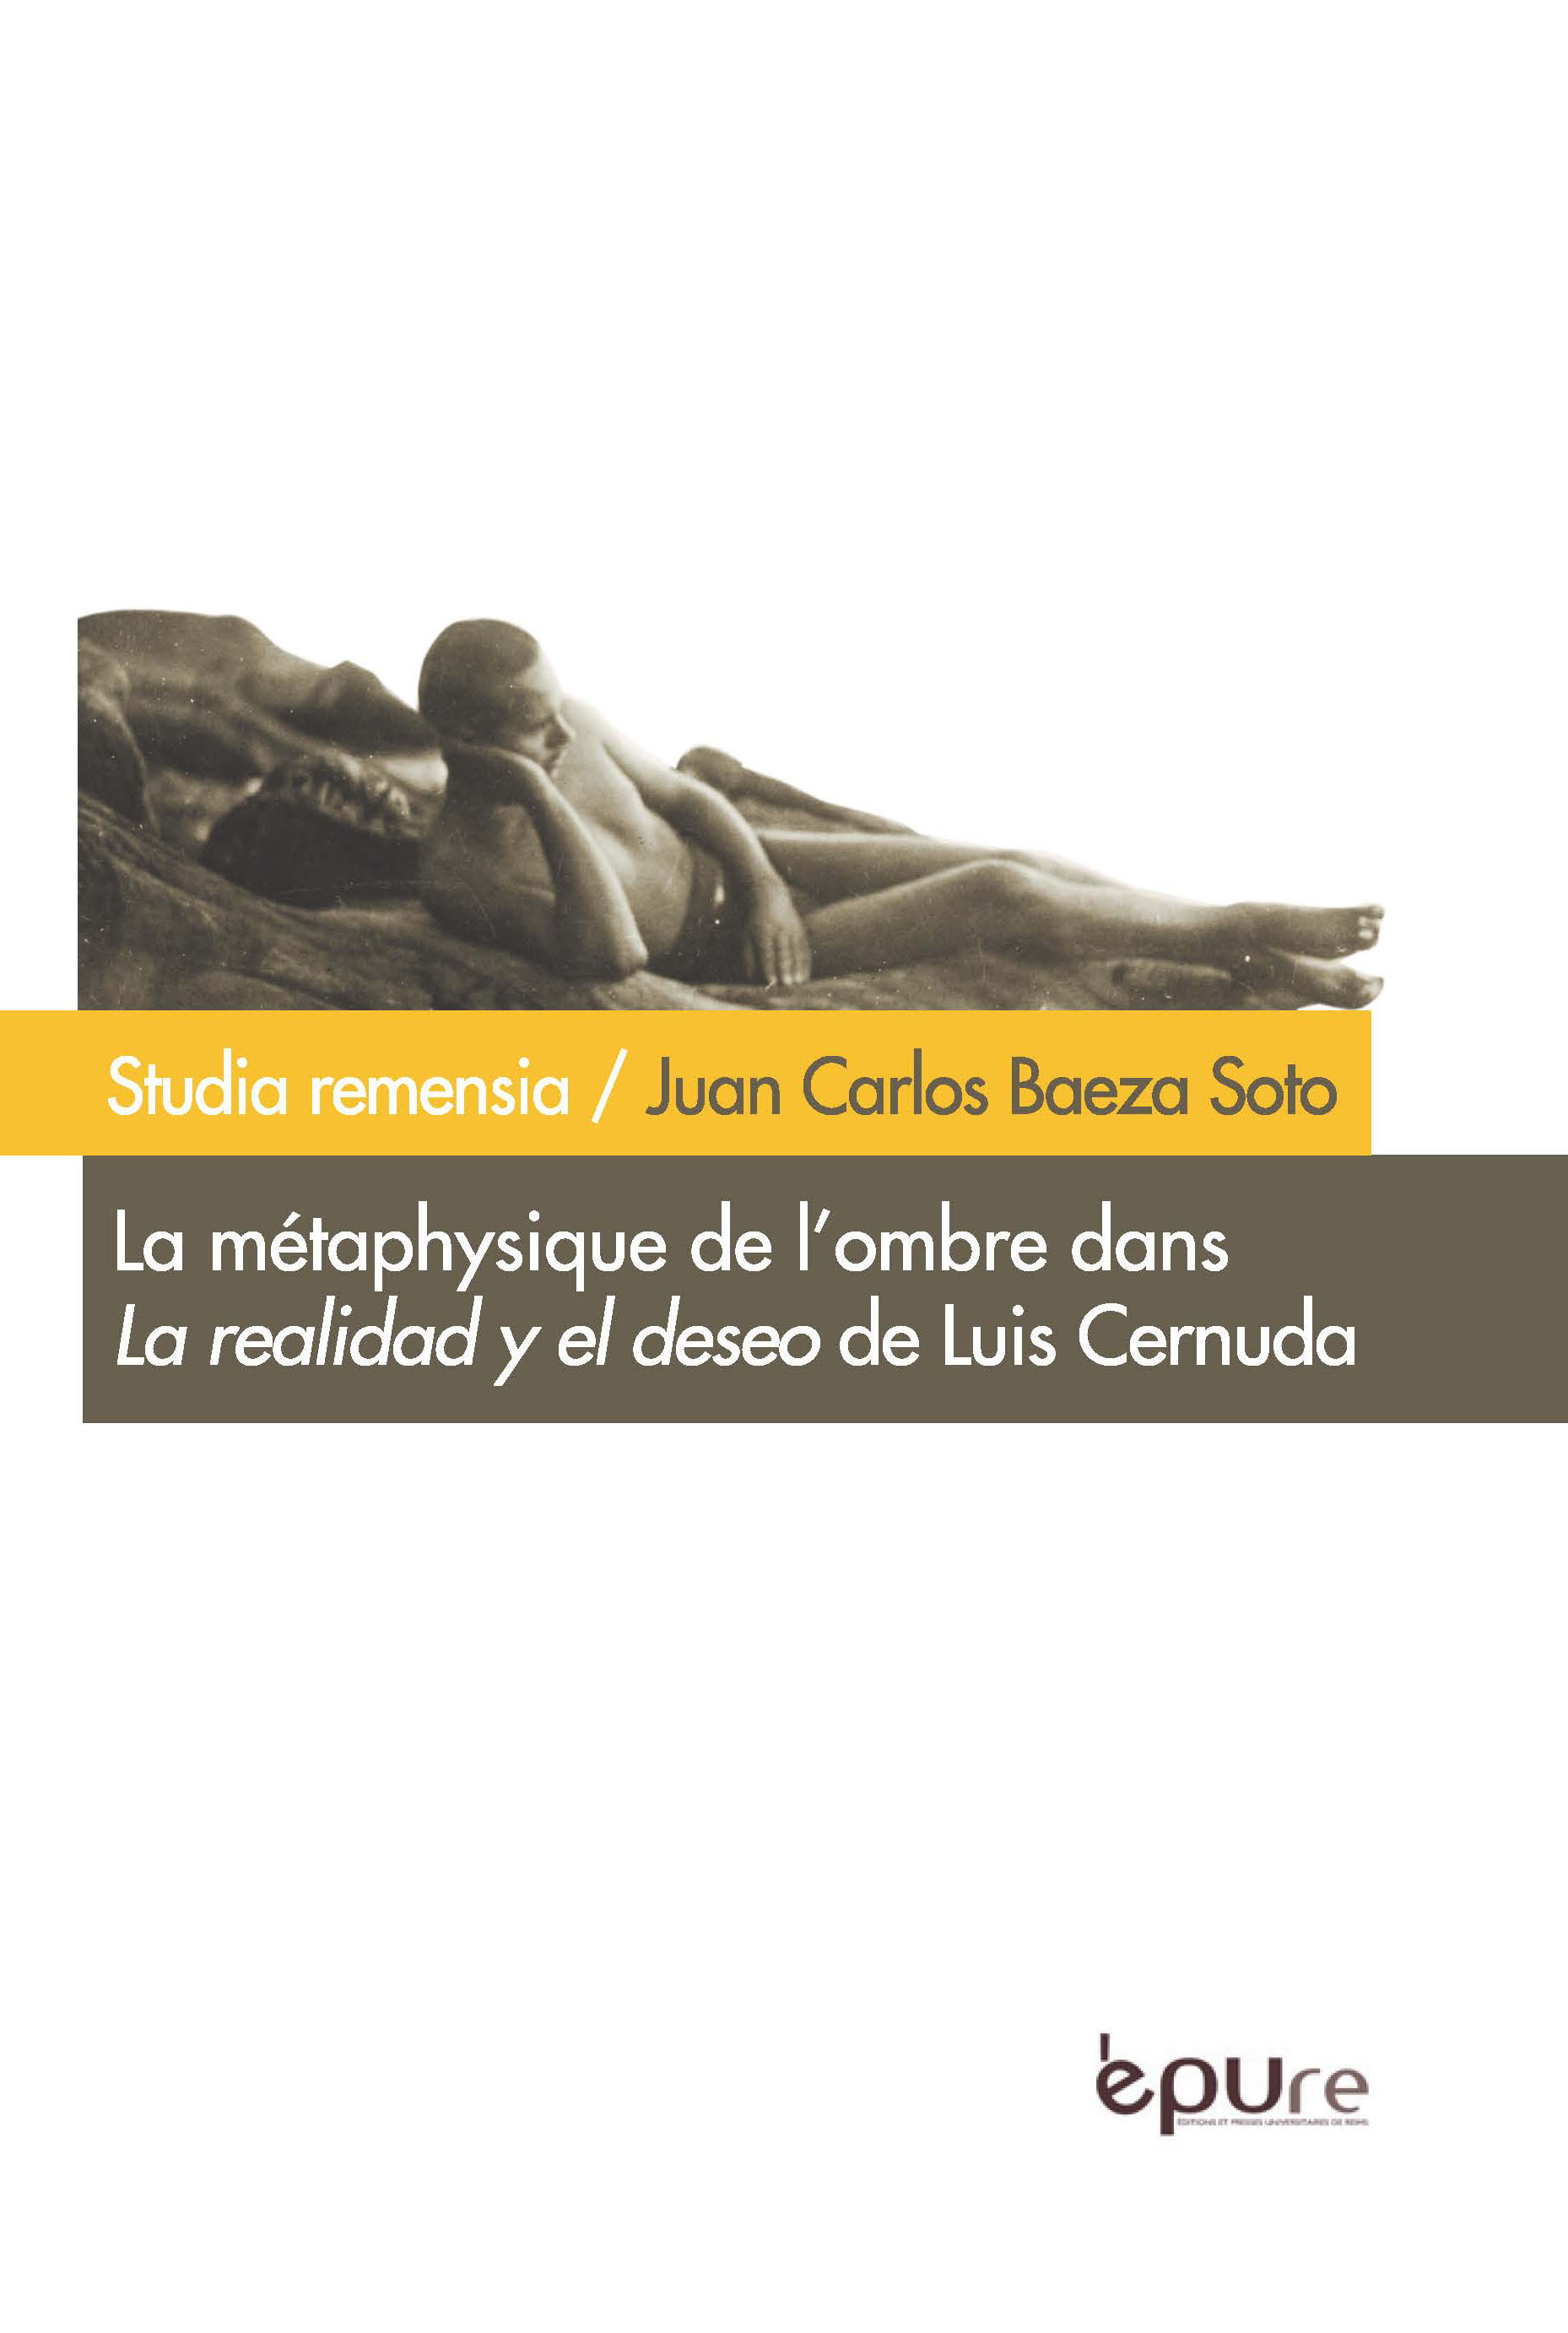 La métaphysique de l'ombre dans "La realidad y el deseo" de Luis Cernuda